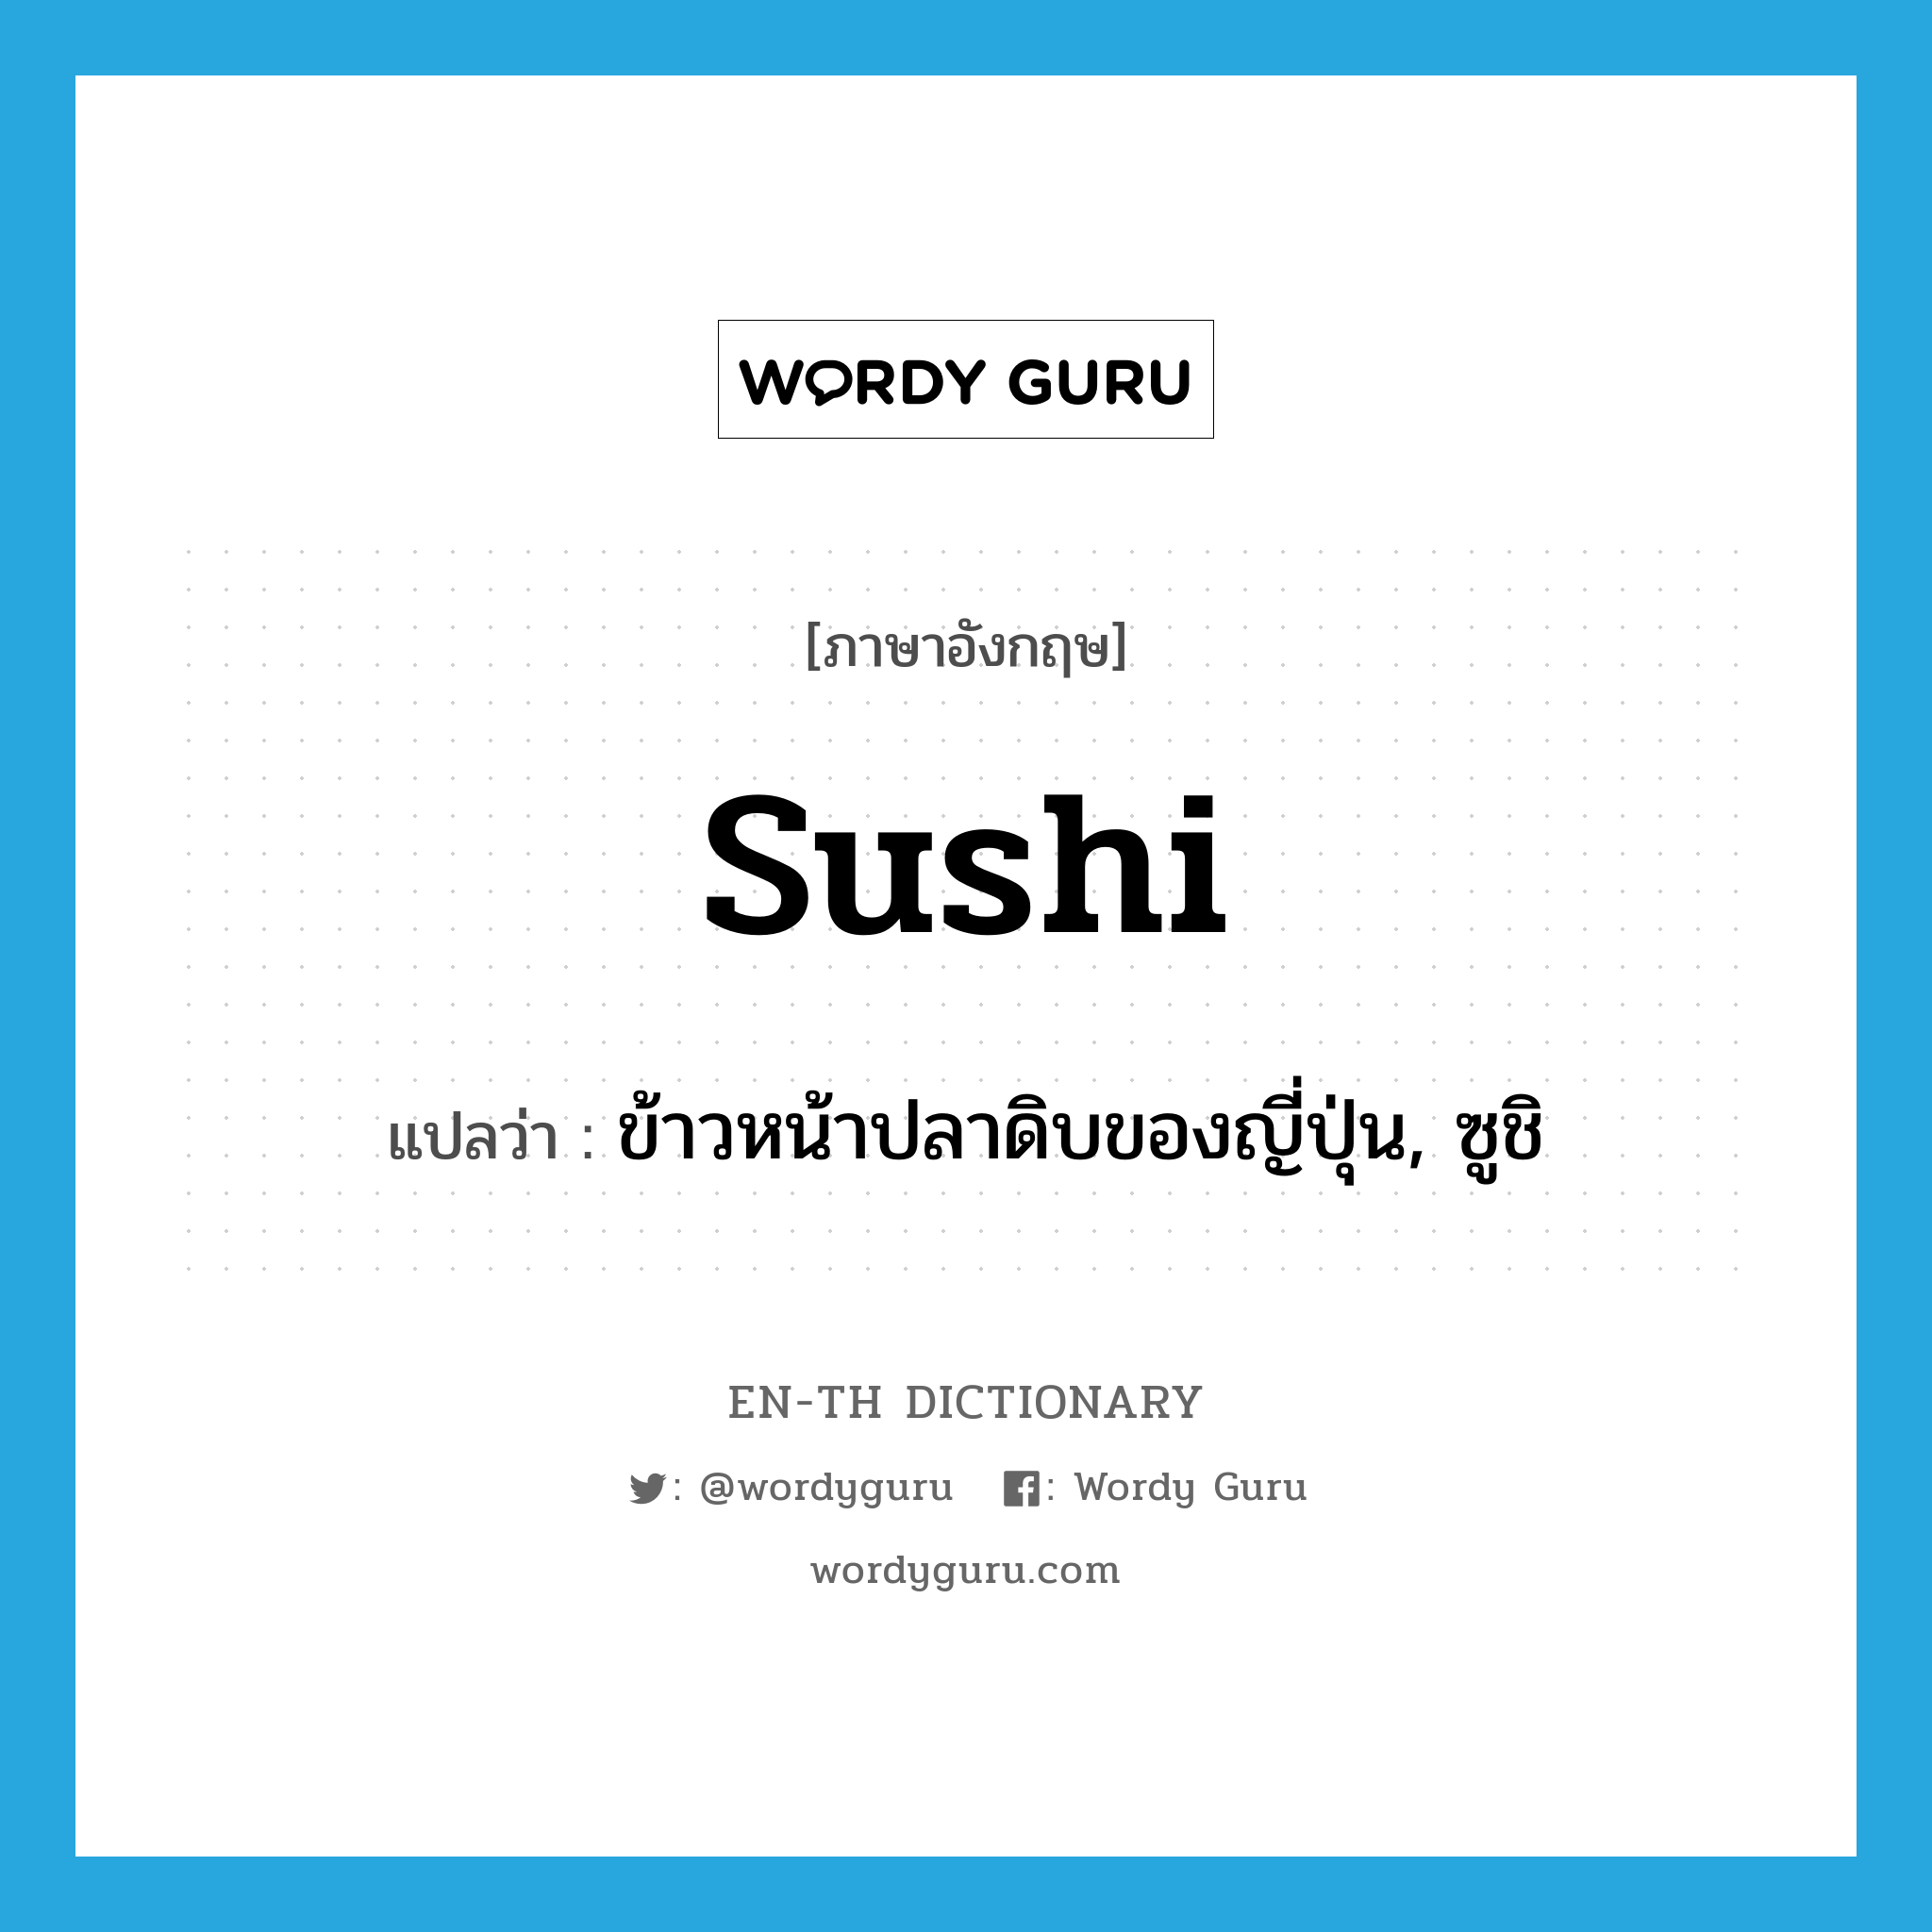 sushi แปลว่า?, คำศัพท์ภาษาอังกฤษ sushi แปลว่า ข้าวหน้าปลาดิบของญี่ปุ่น, ซูชิ ประเภท N หมวด N